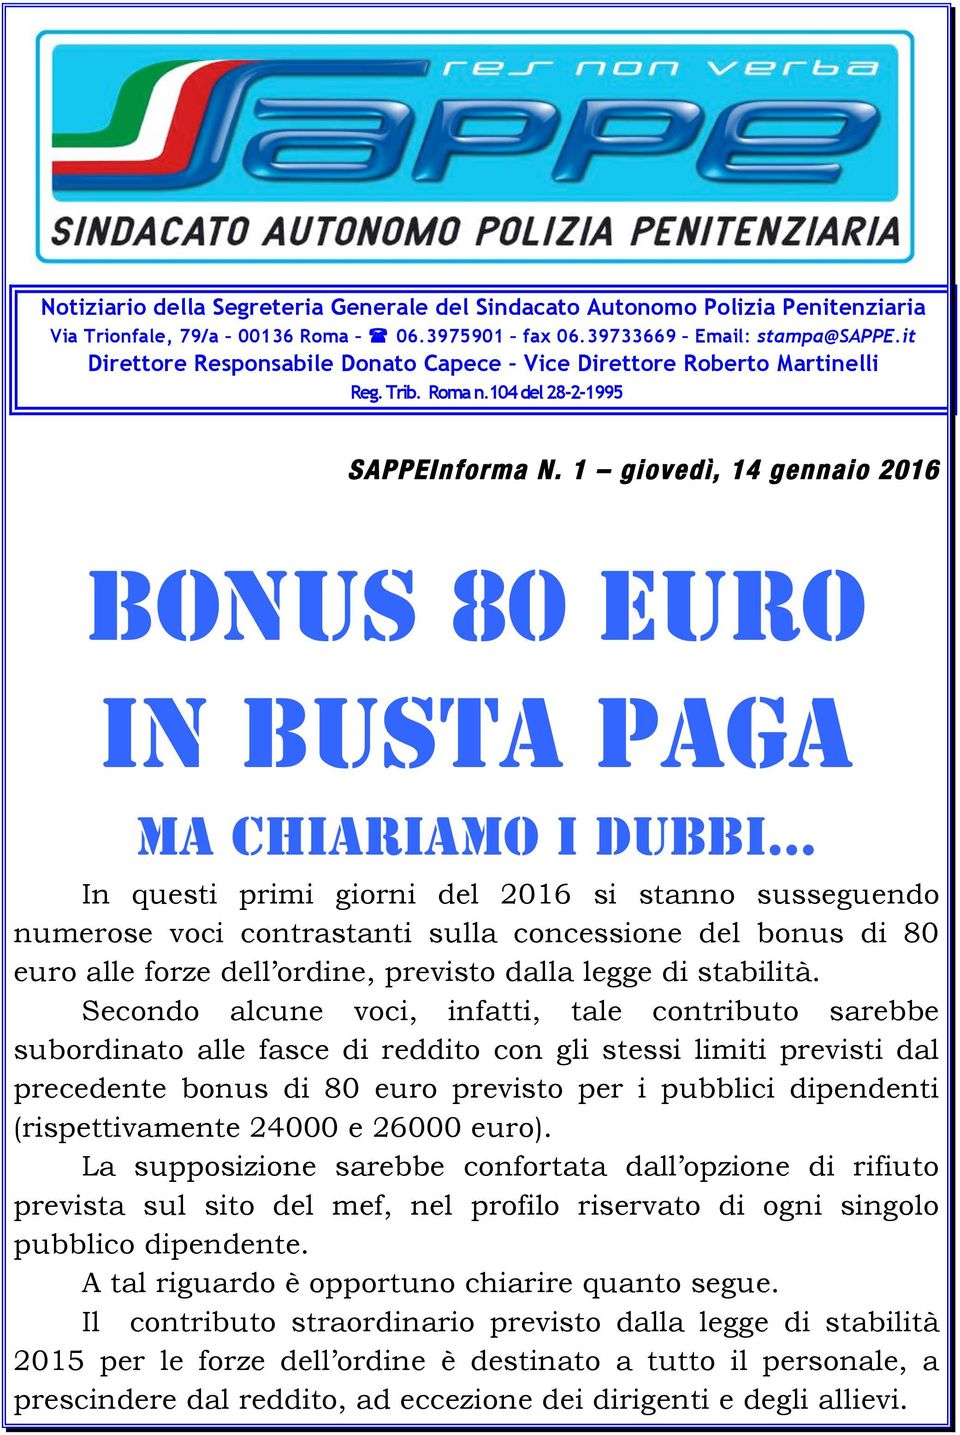 1 giovedì, 14 gennaio 2016 BONUS 80 EURO In busta paga Ma chiariamo i dubbi In questi primi giorni del 2016 si stanno susseguendo numerose voci contrastanti sulla concessione del bonus di 80 euro